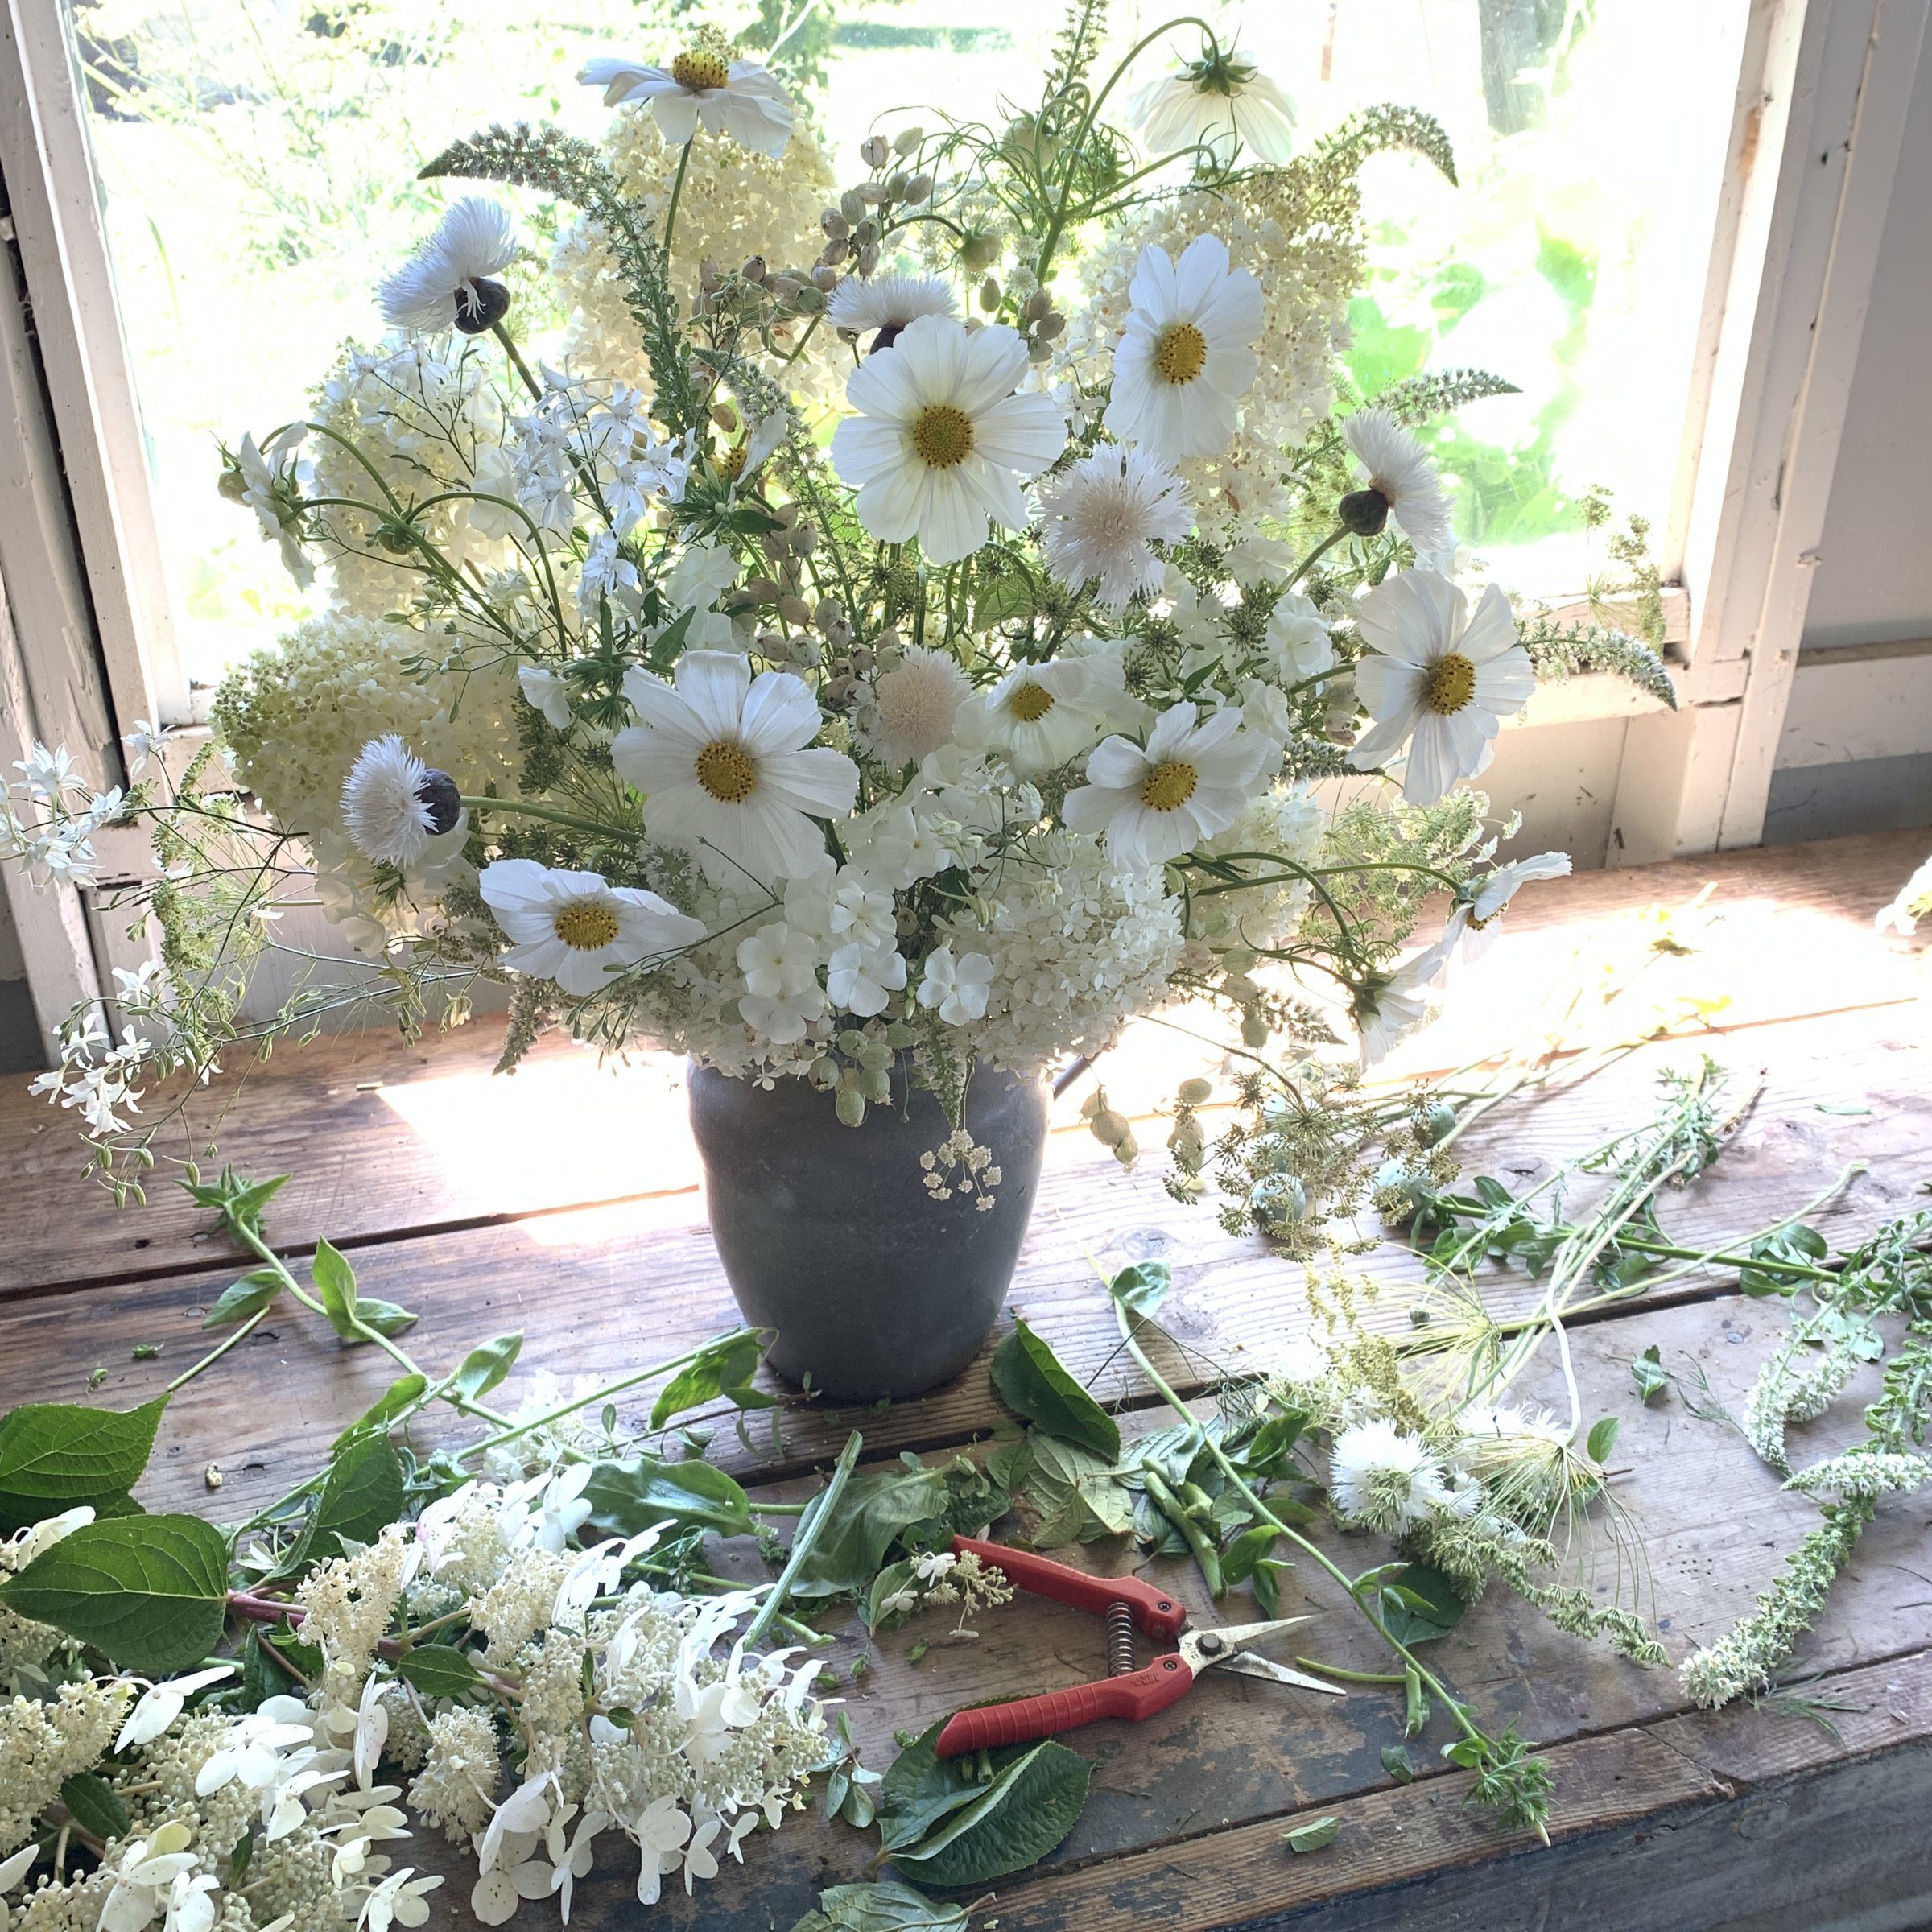 An arrangement of flowers